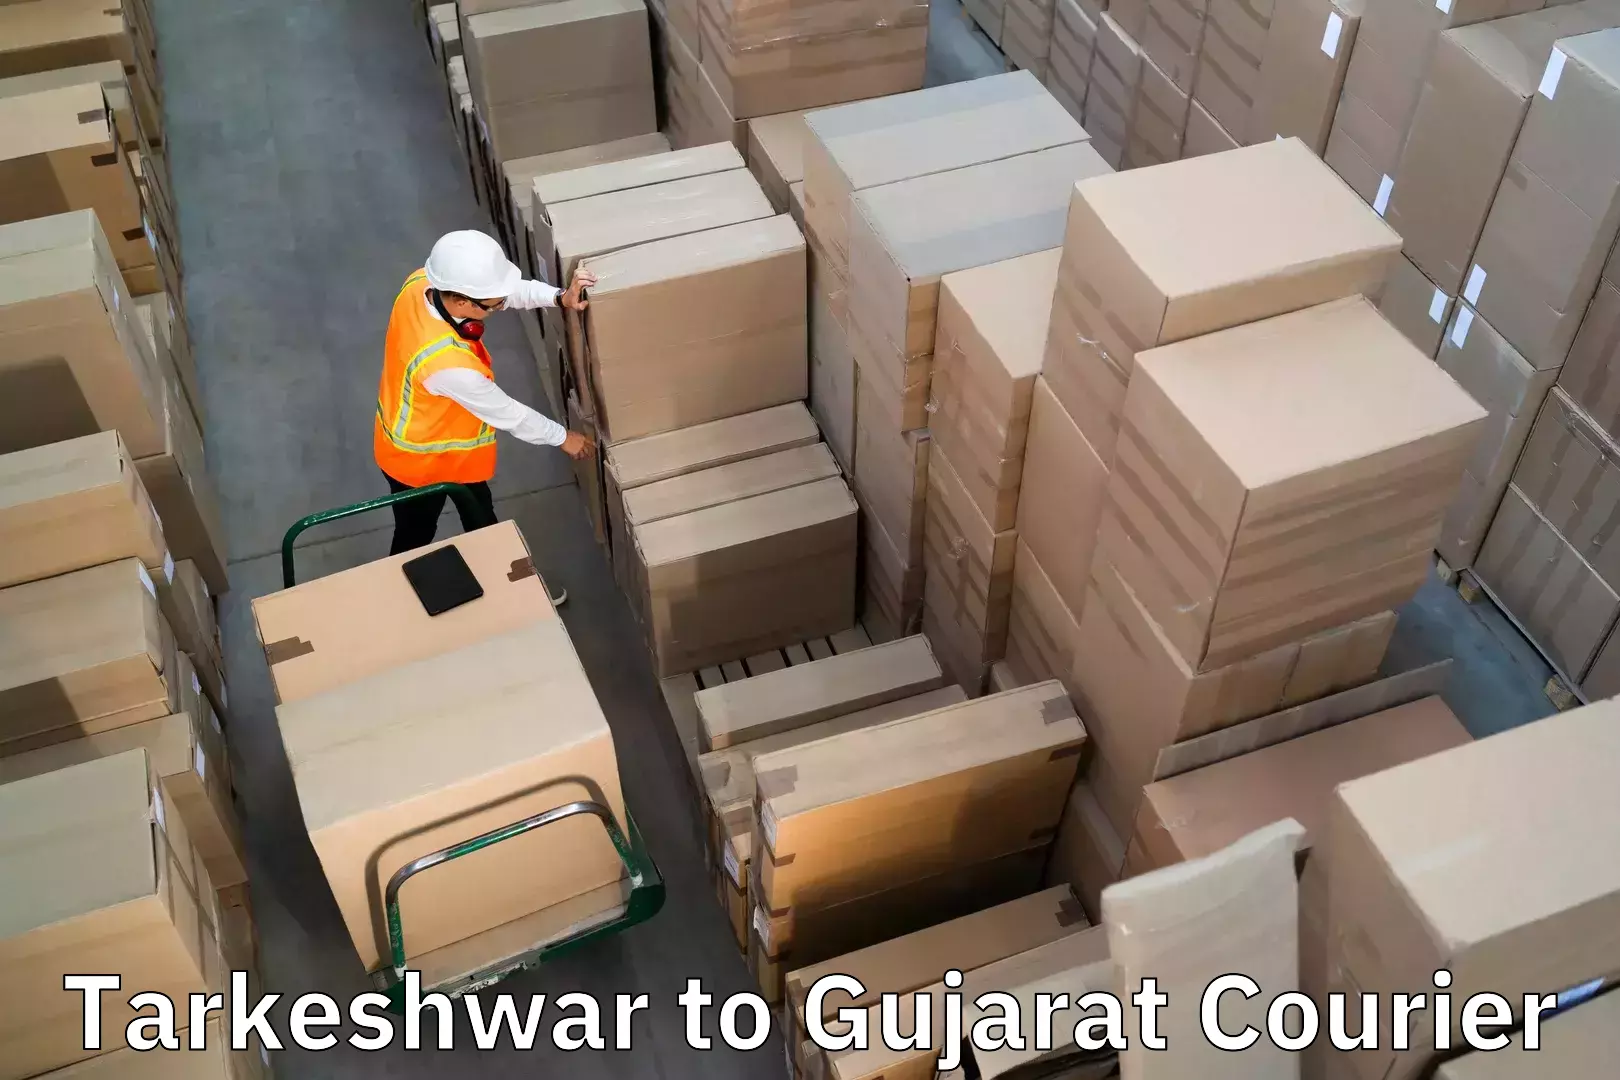 Luggage delivery system Tarkeshwar to Valsad